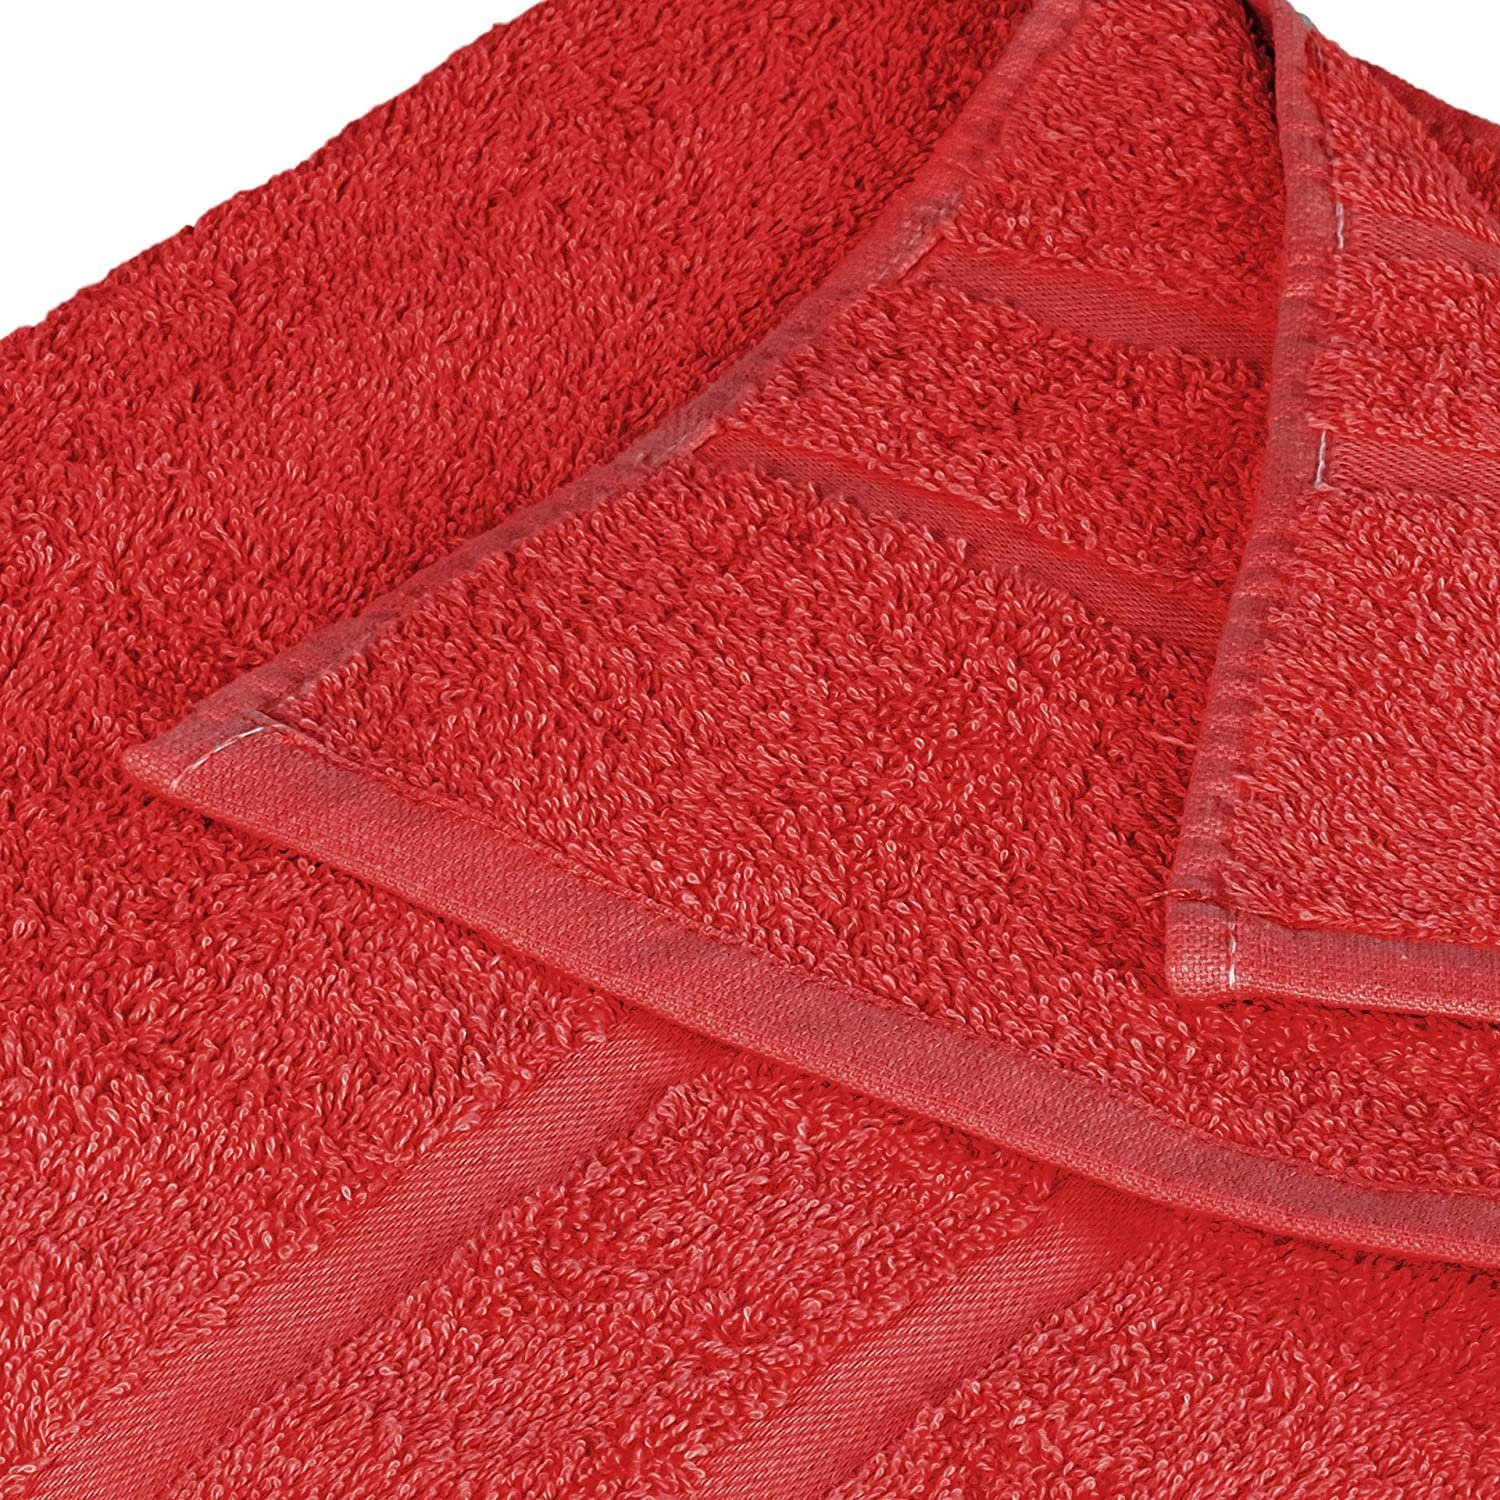 StickandShine Handtuch 2er Set Premium Frottee Handtuch 50x100 cm in  500g/m² aus 100% Baumwolle (2 Stück), 100% Baumwolle 500GSM Frottee